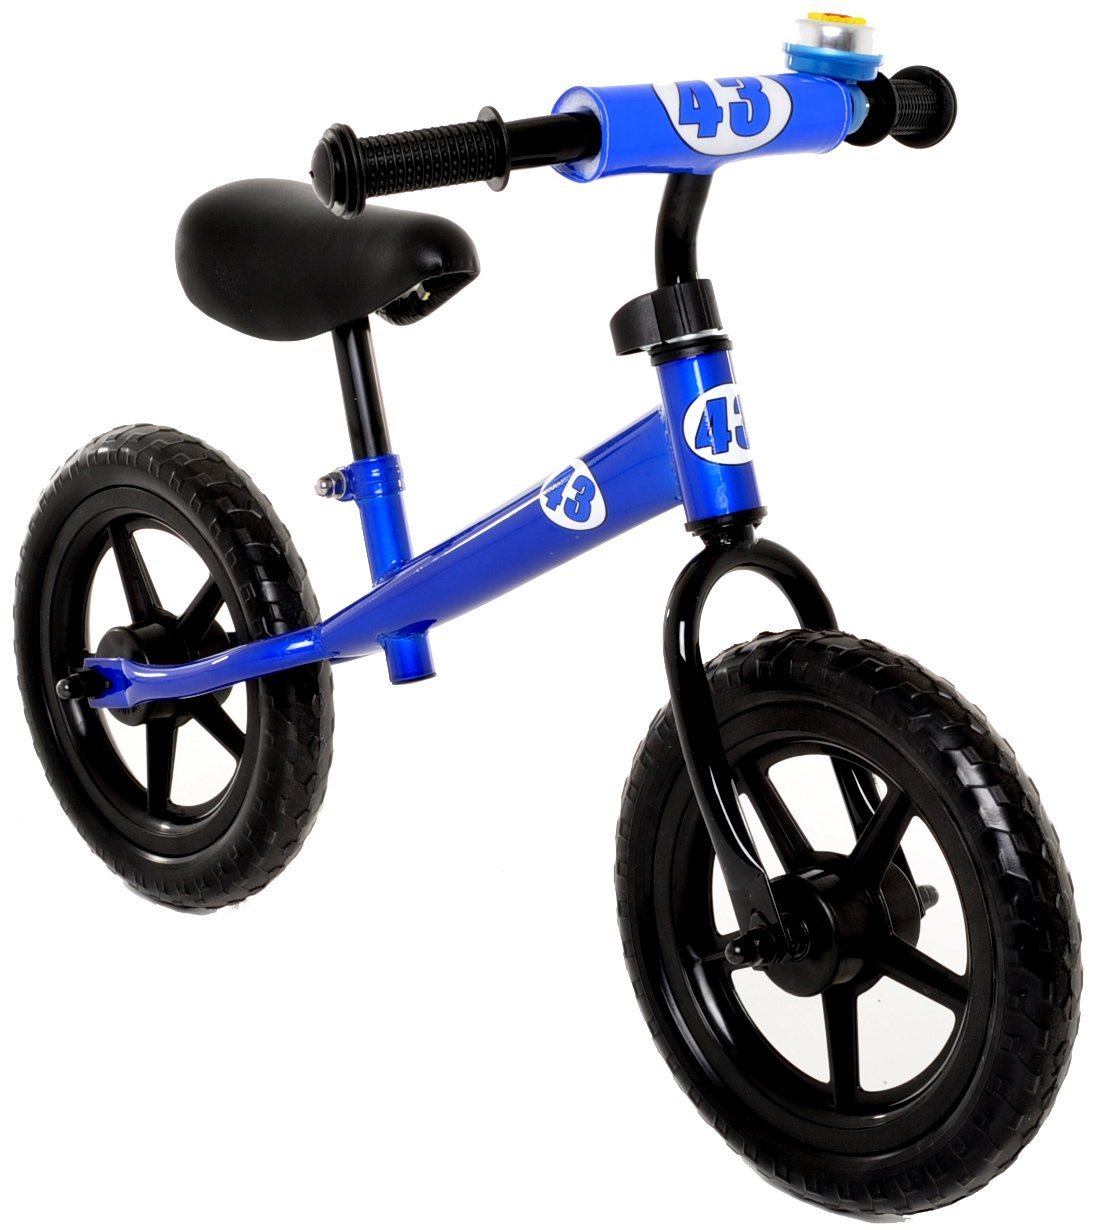 children's bike pedals